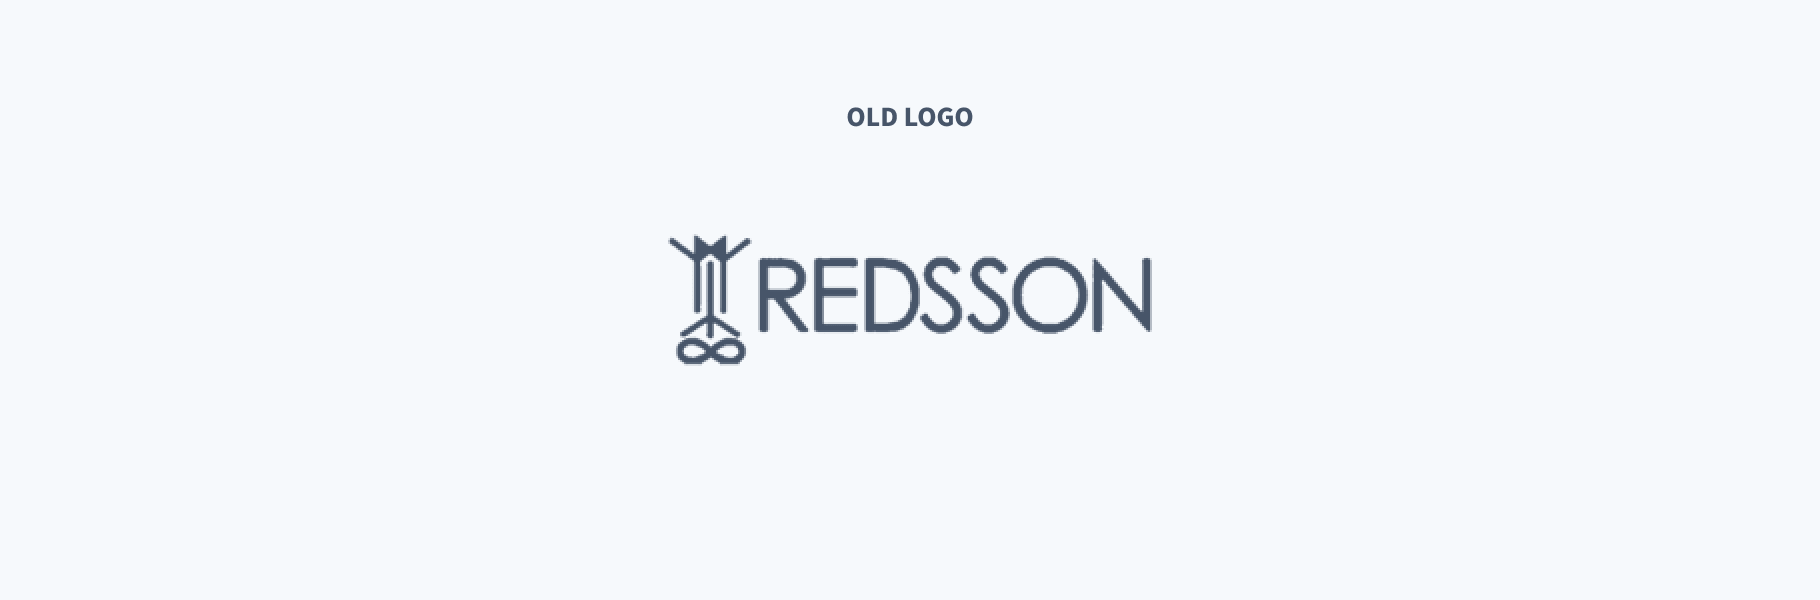 Old Redsson Logo